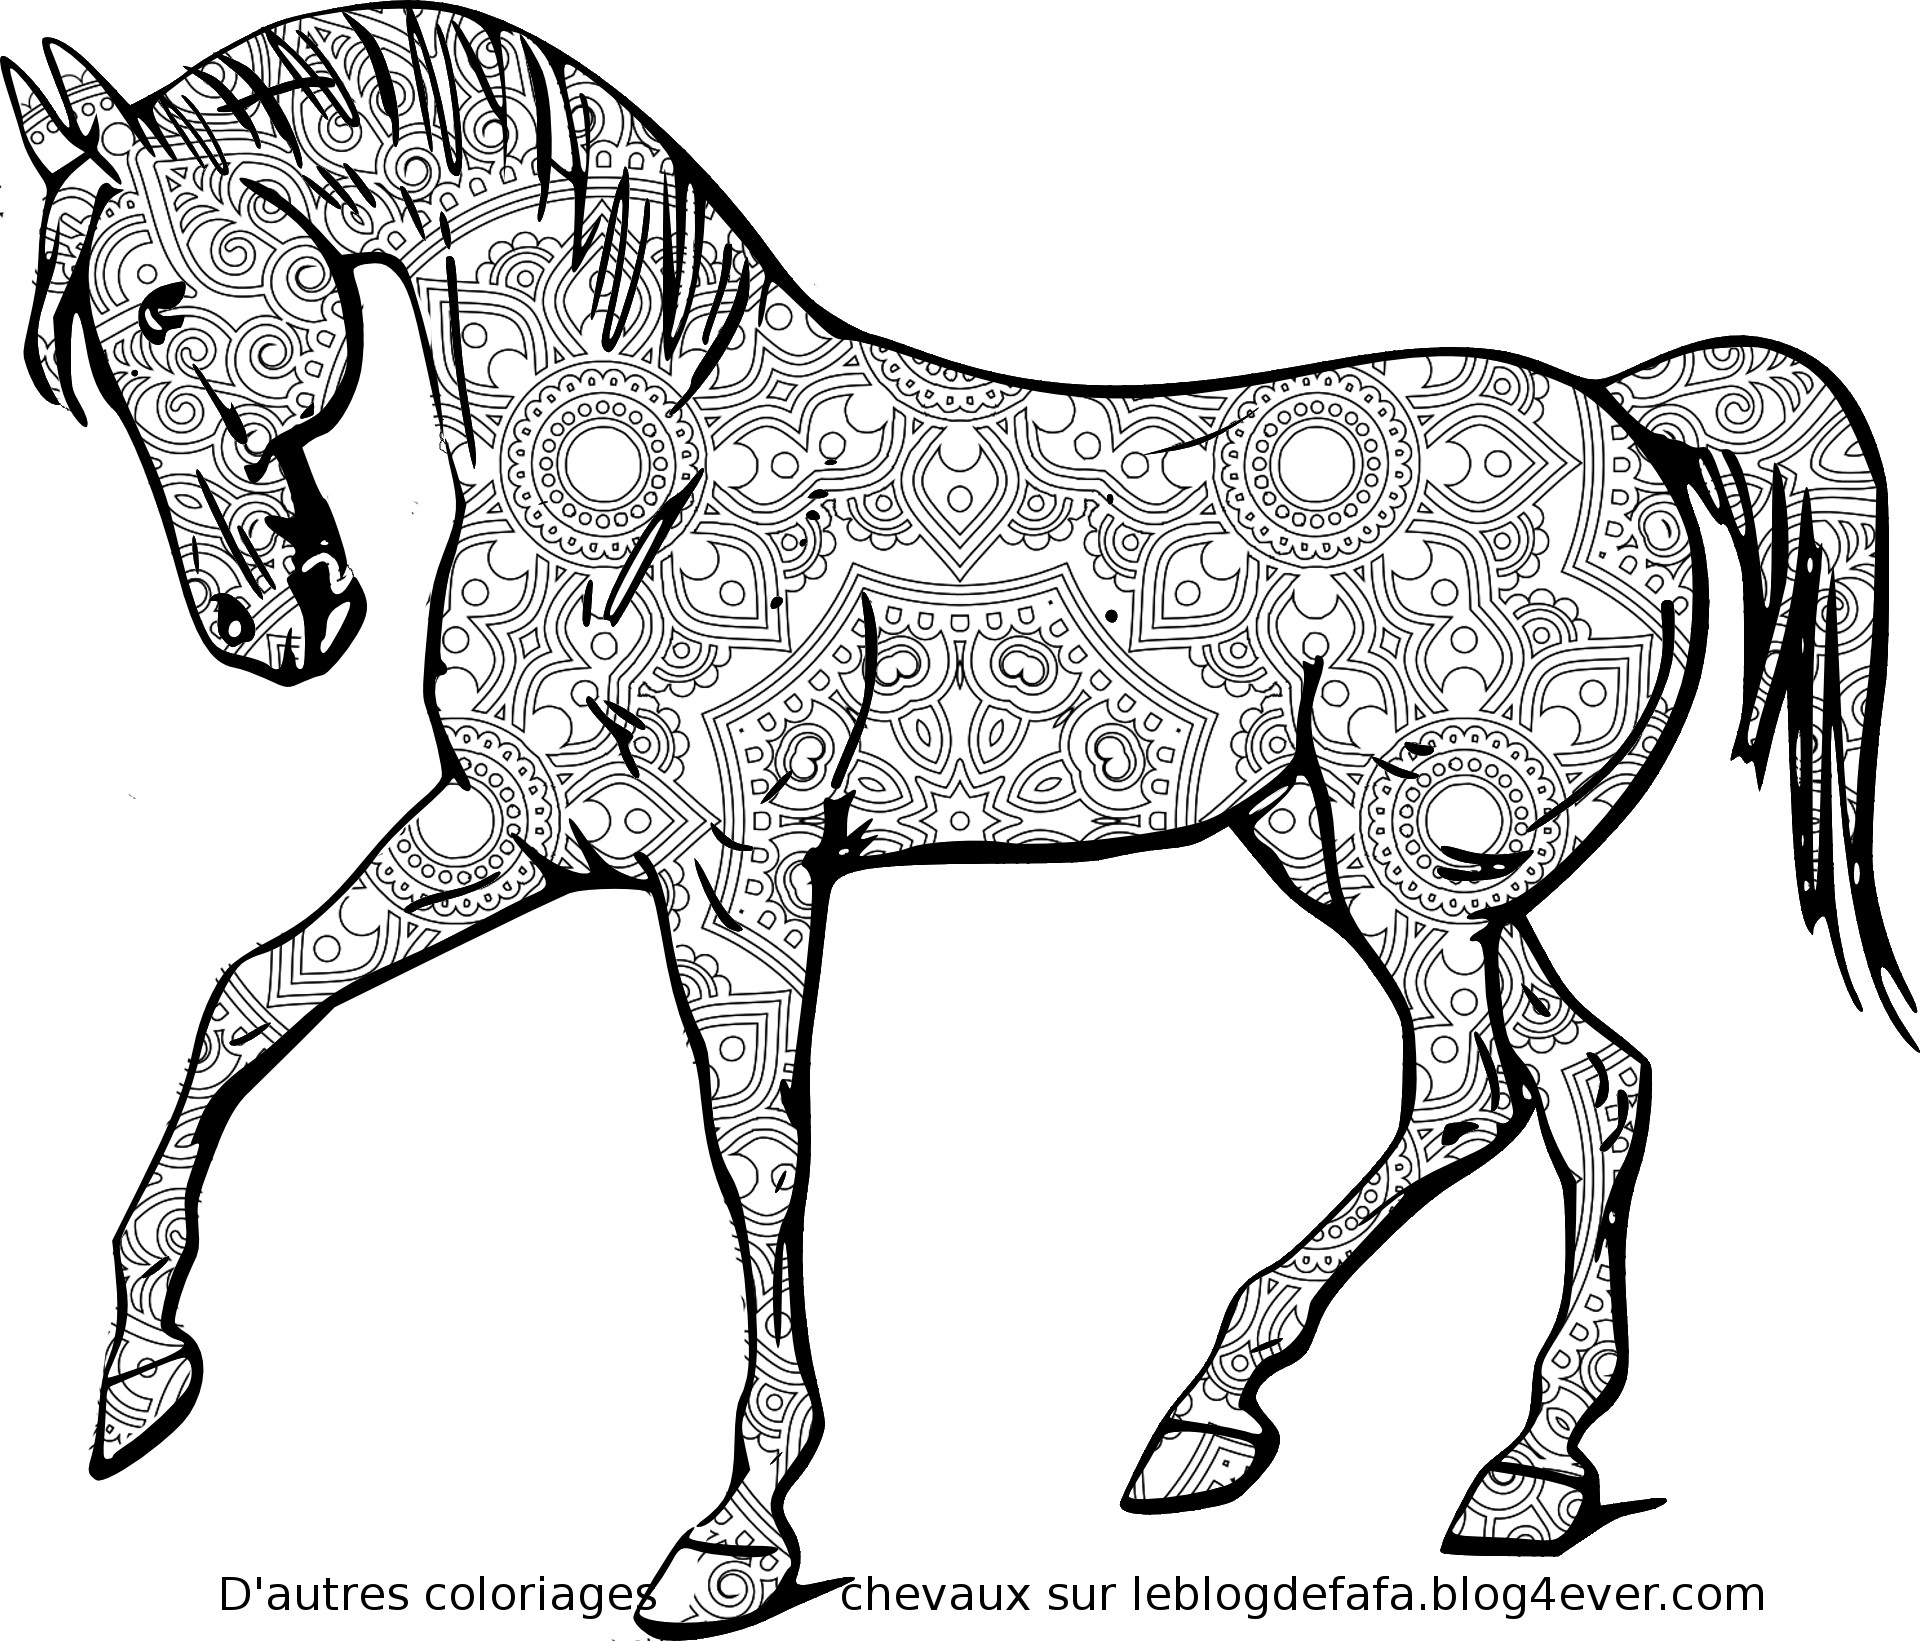 6 Mandalas Chevaux Gratuits À Imprimer / Mandalas Horses Colorings Free concernant Chevaux Dessin A Imprimer